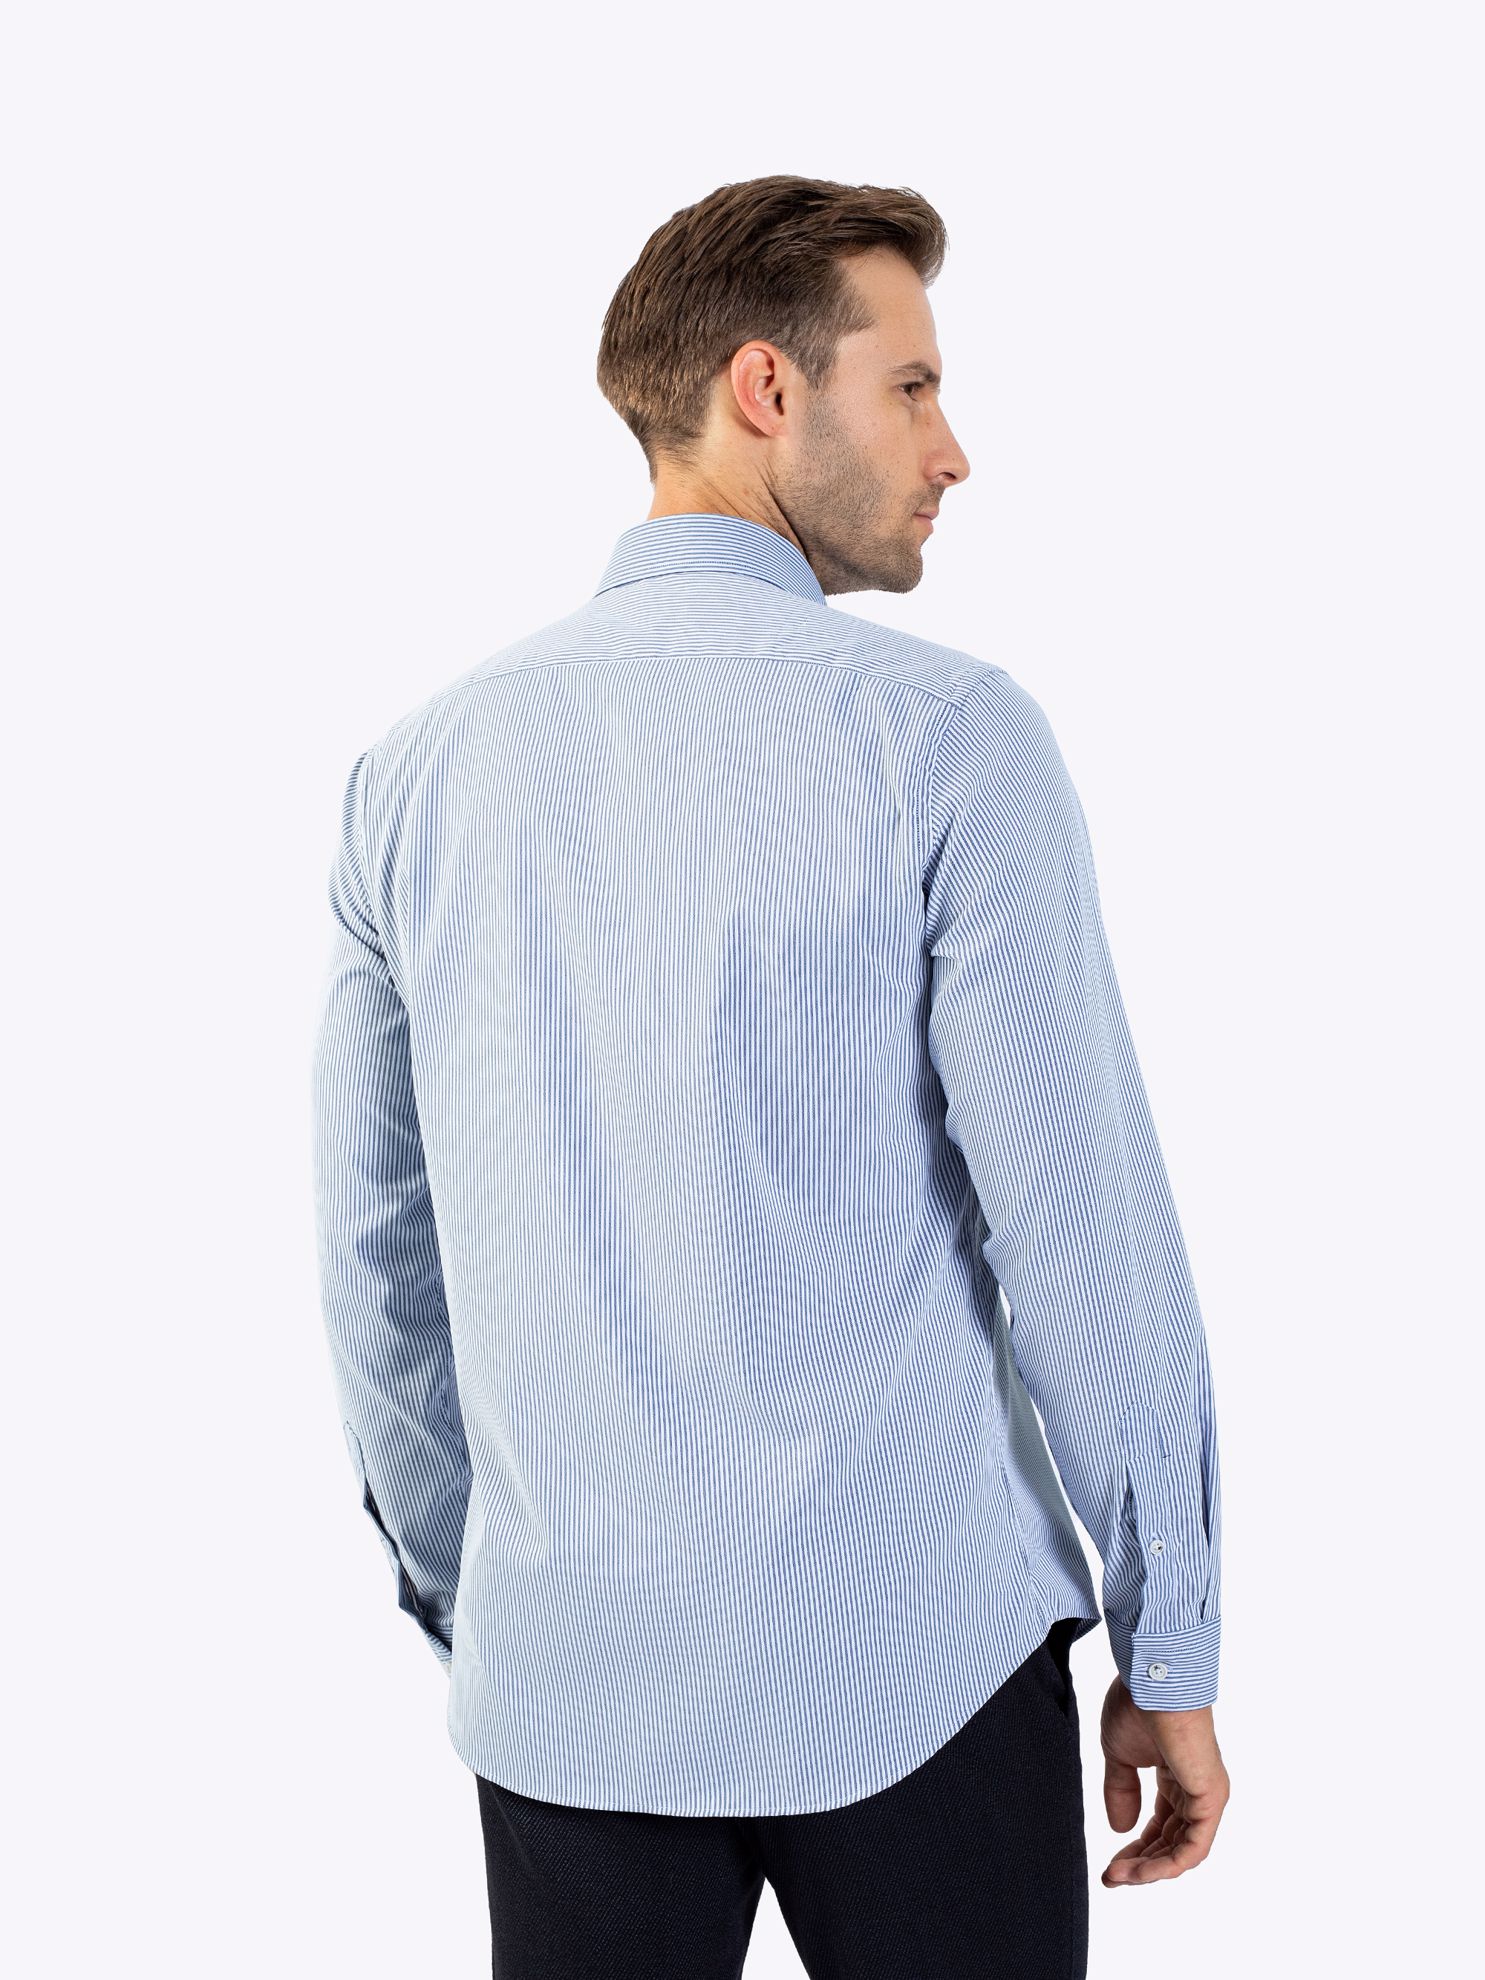 Karaca Erkek Slim Fit Gömlek-Lacivert. ürün görseli